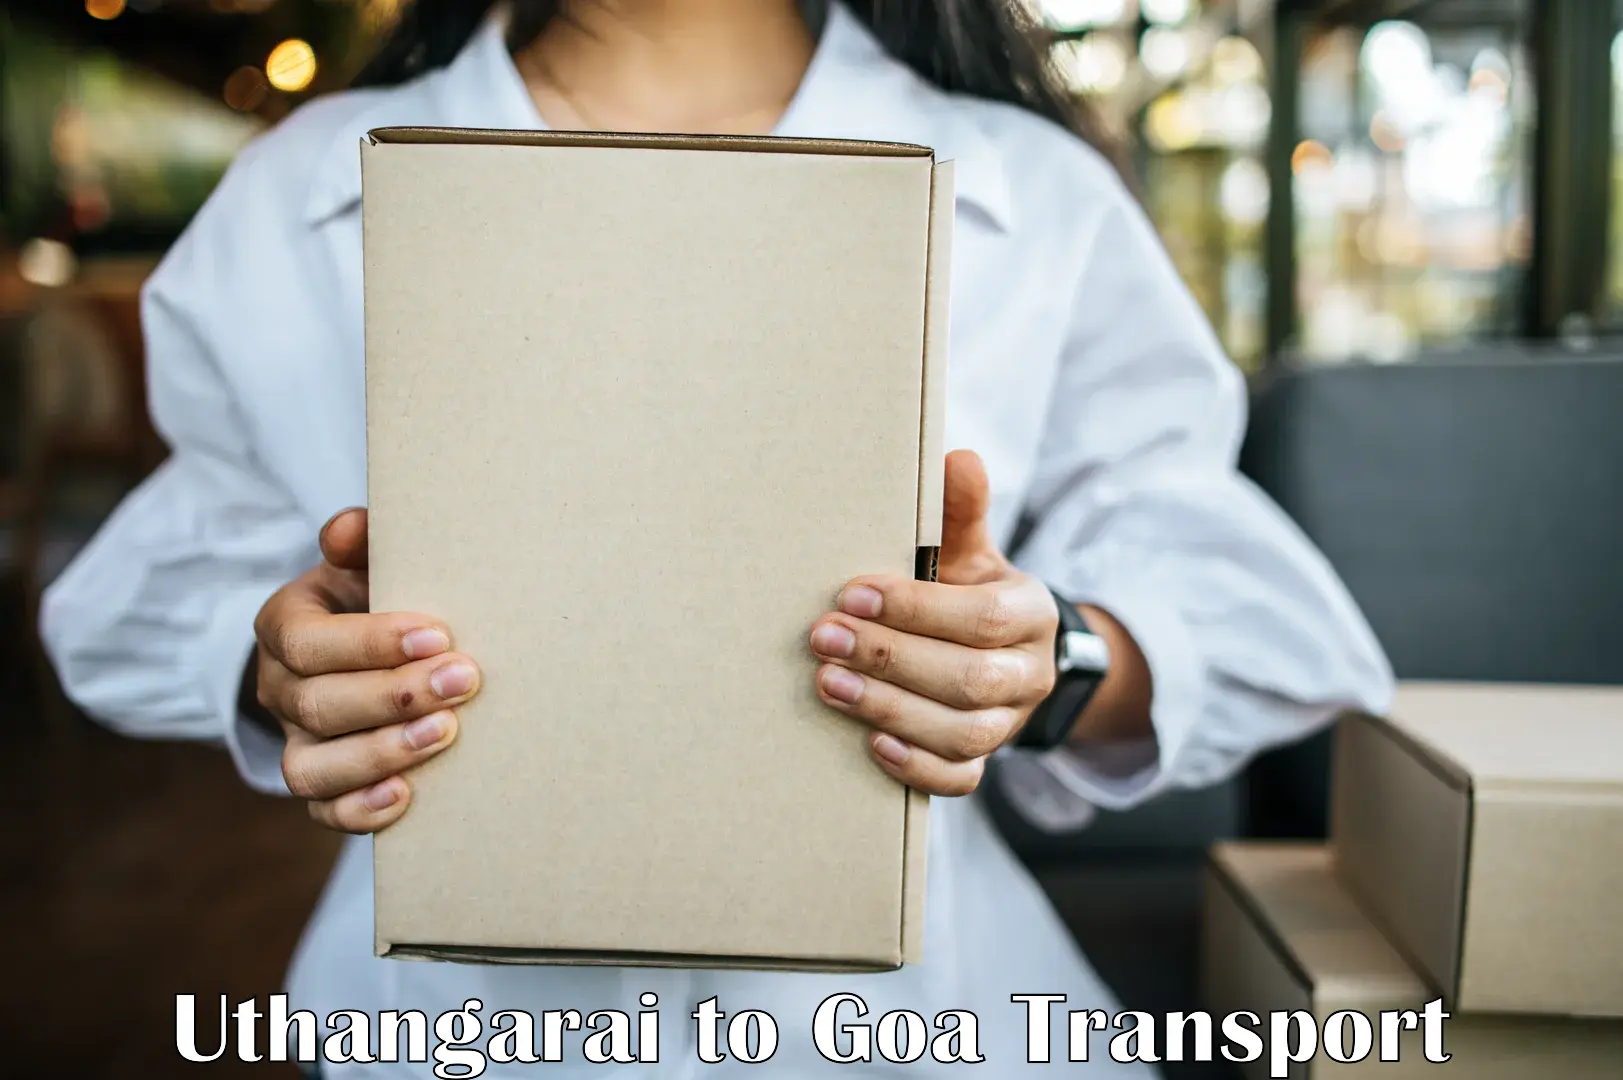 All India transport service Uthangarai to Goa